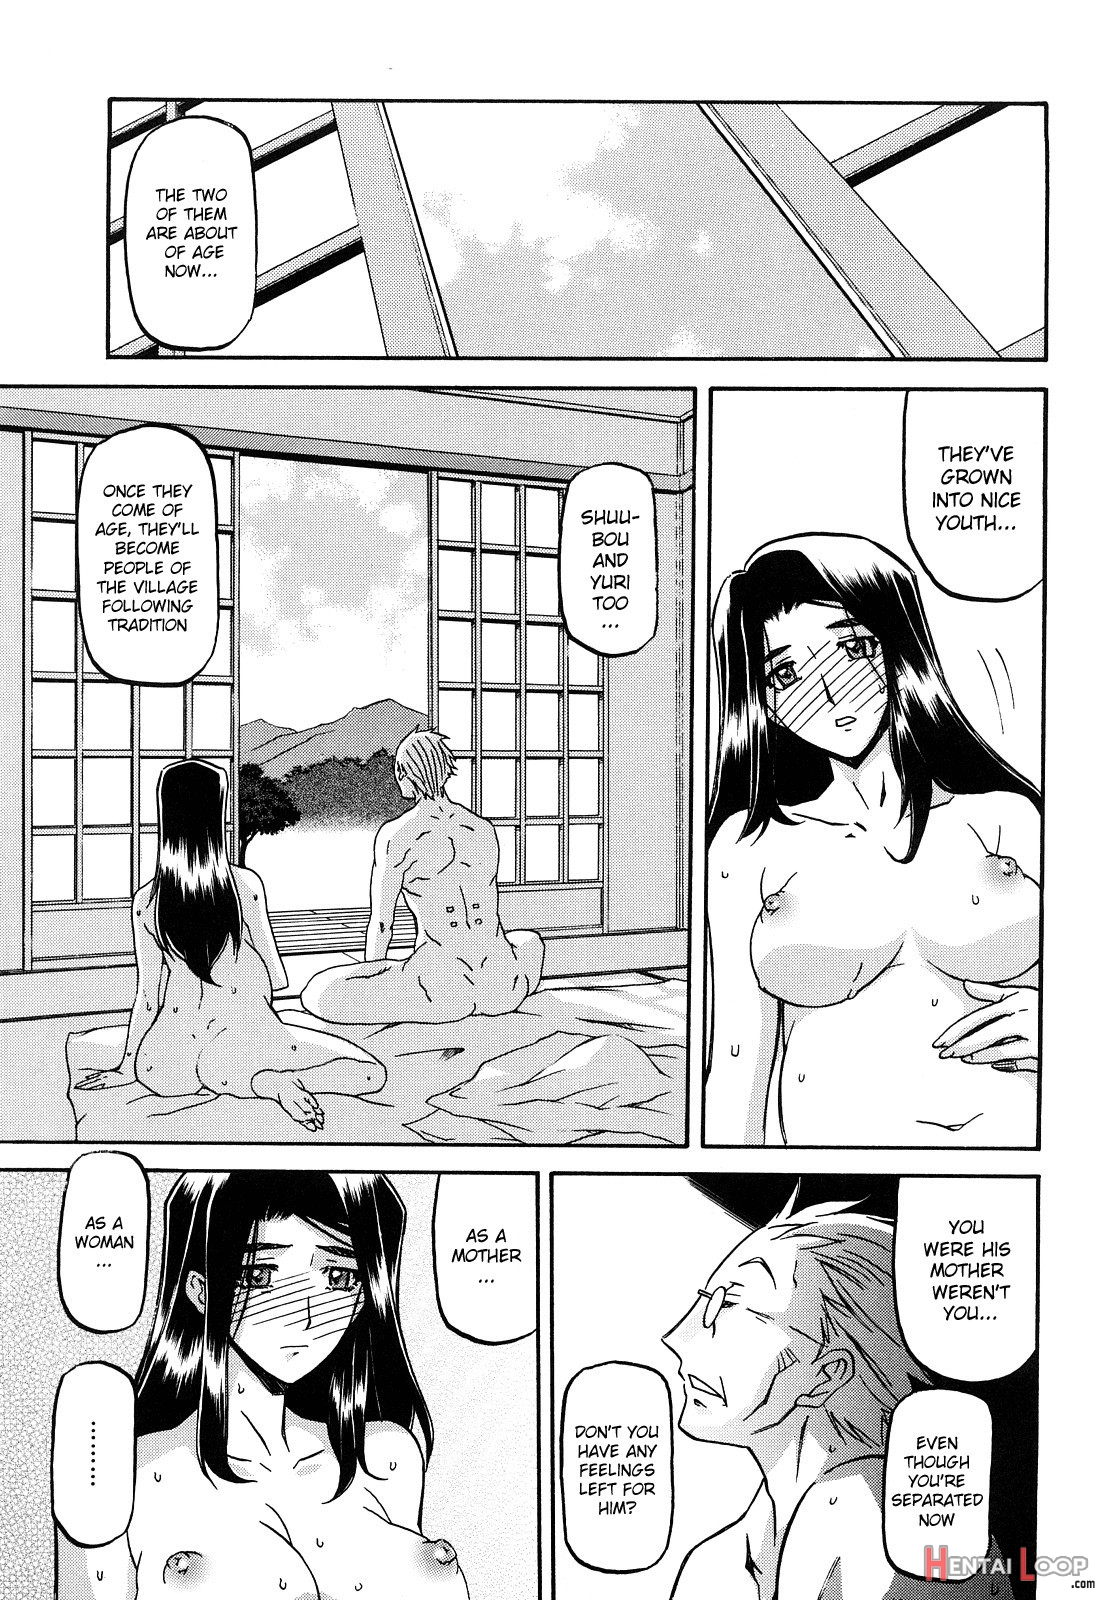 Sayuki No Sato page 279